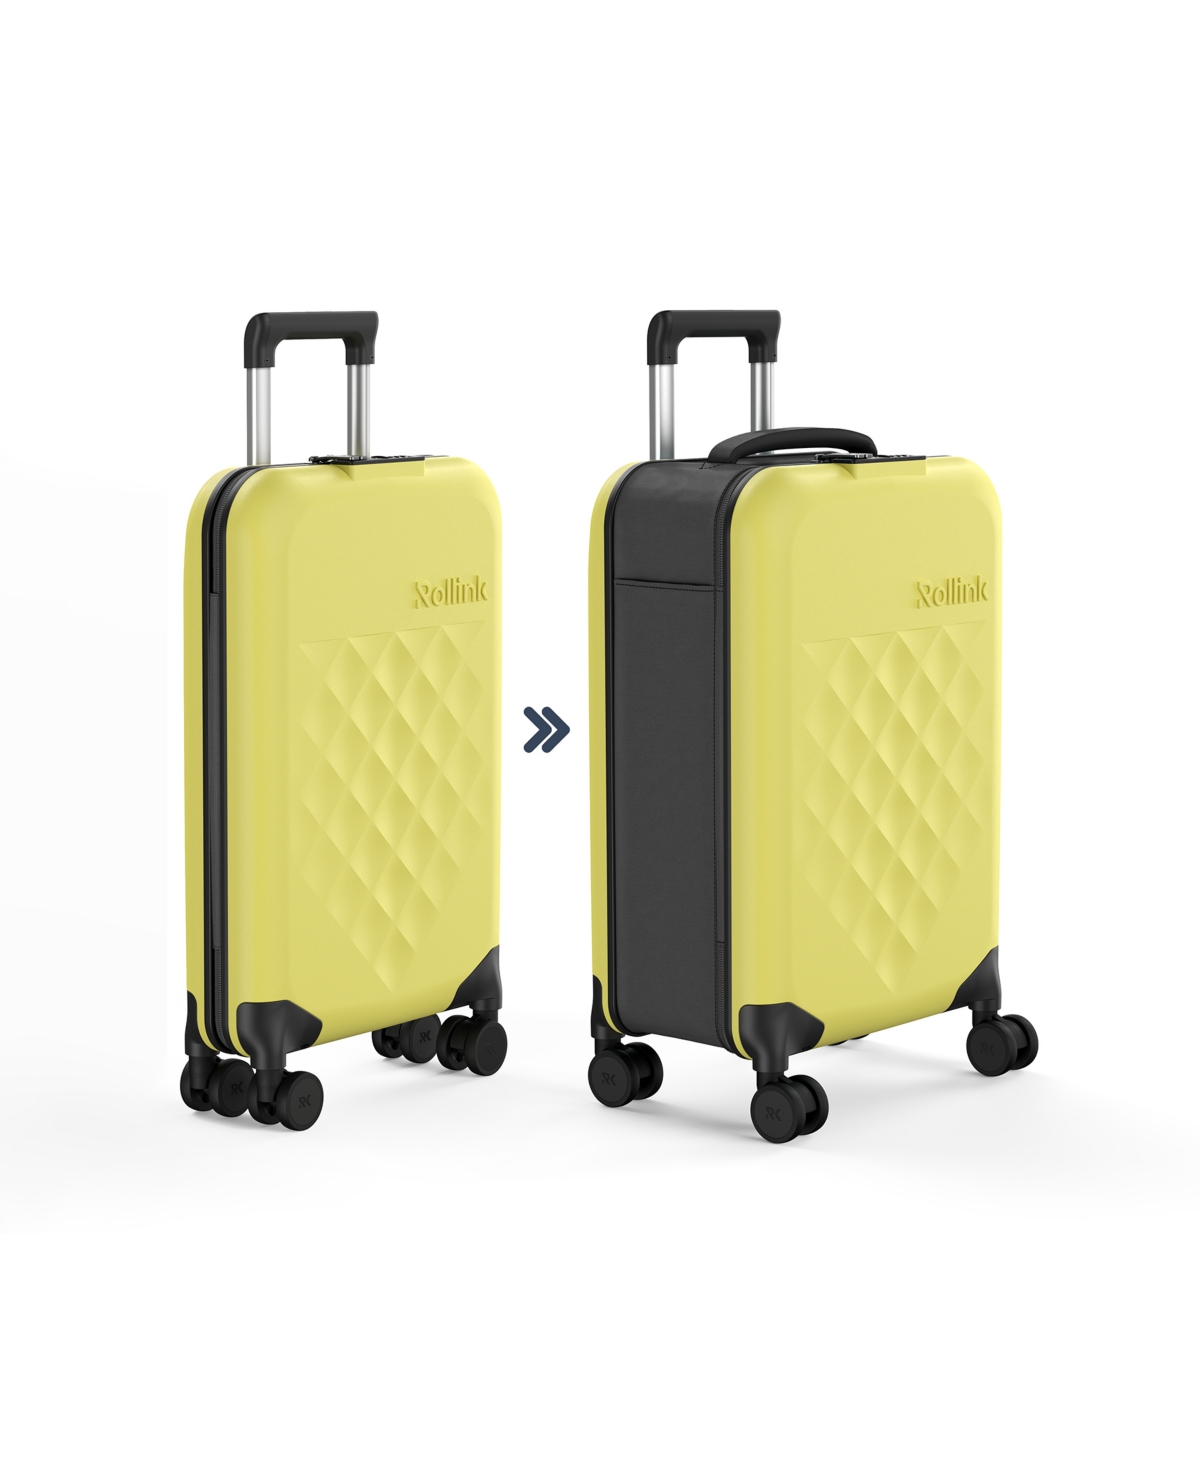 Flex 360 Carry-On 22" Spinner Suitcase - Dark Blue